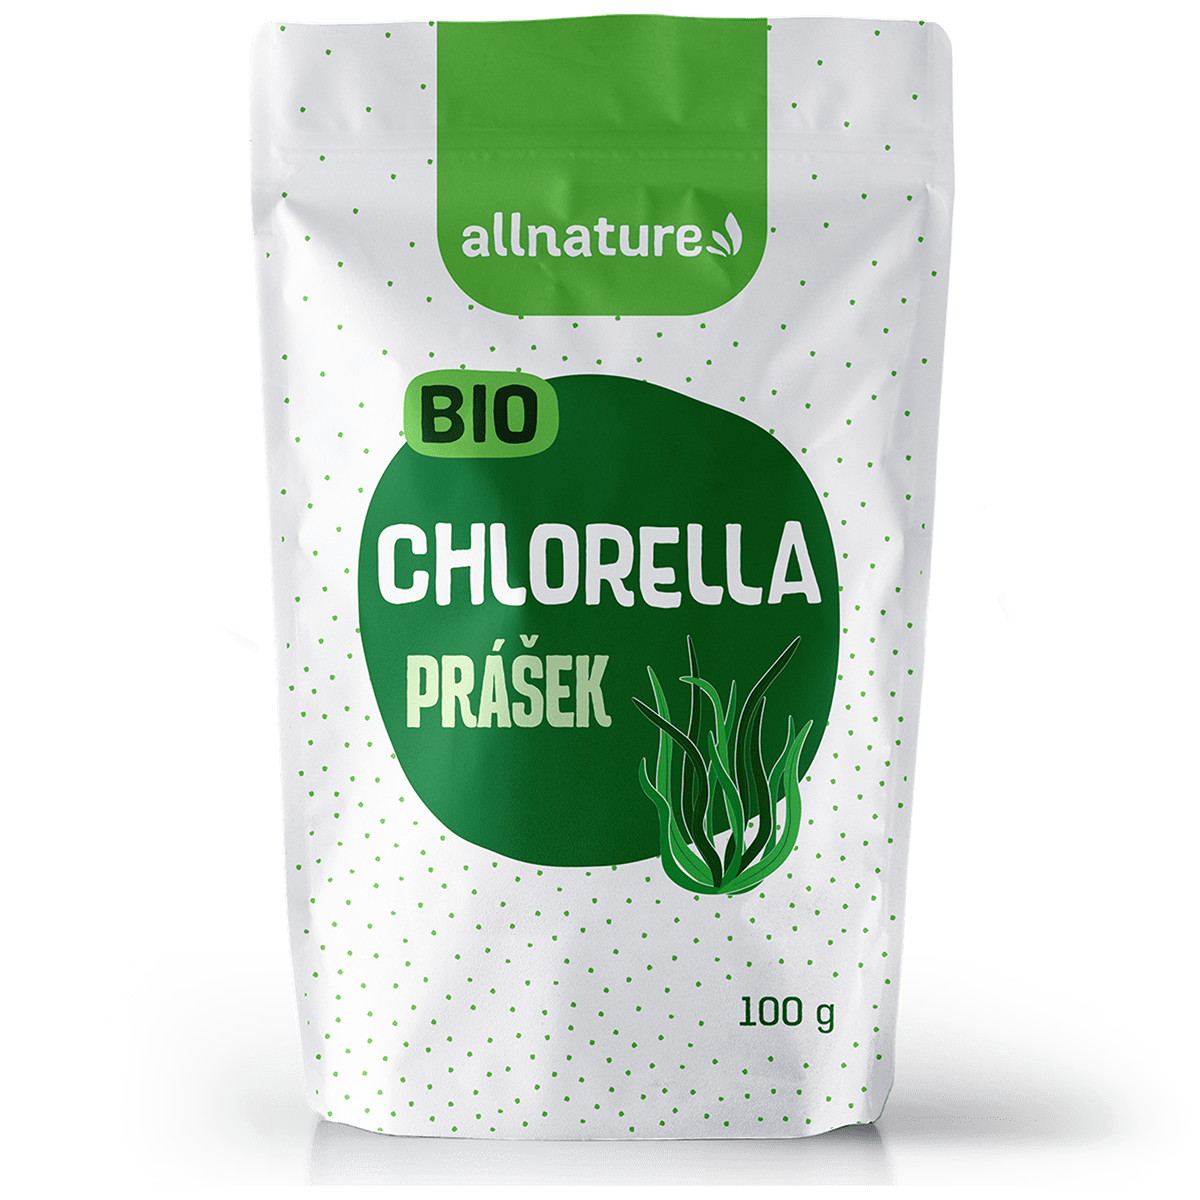 Allnature Chlorella prášek BIO (100 g) - podporuje trávení a správnou činnost jater Allnature